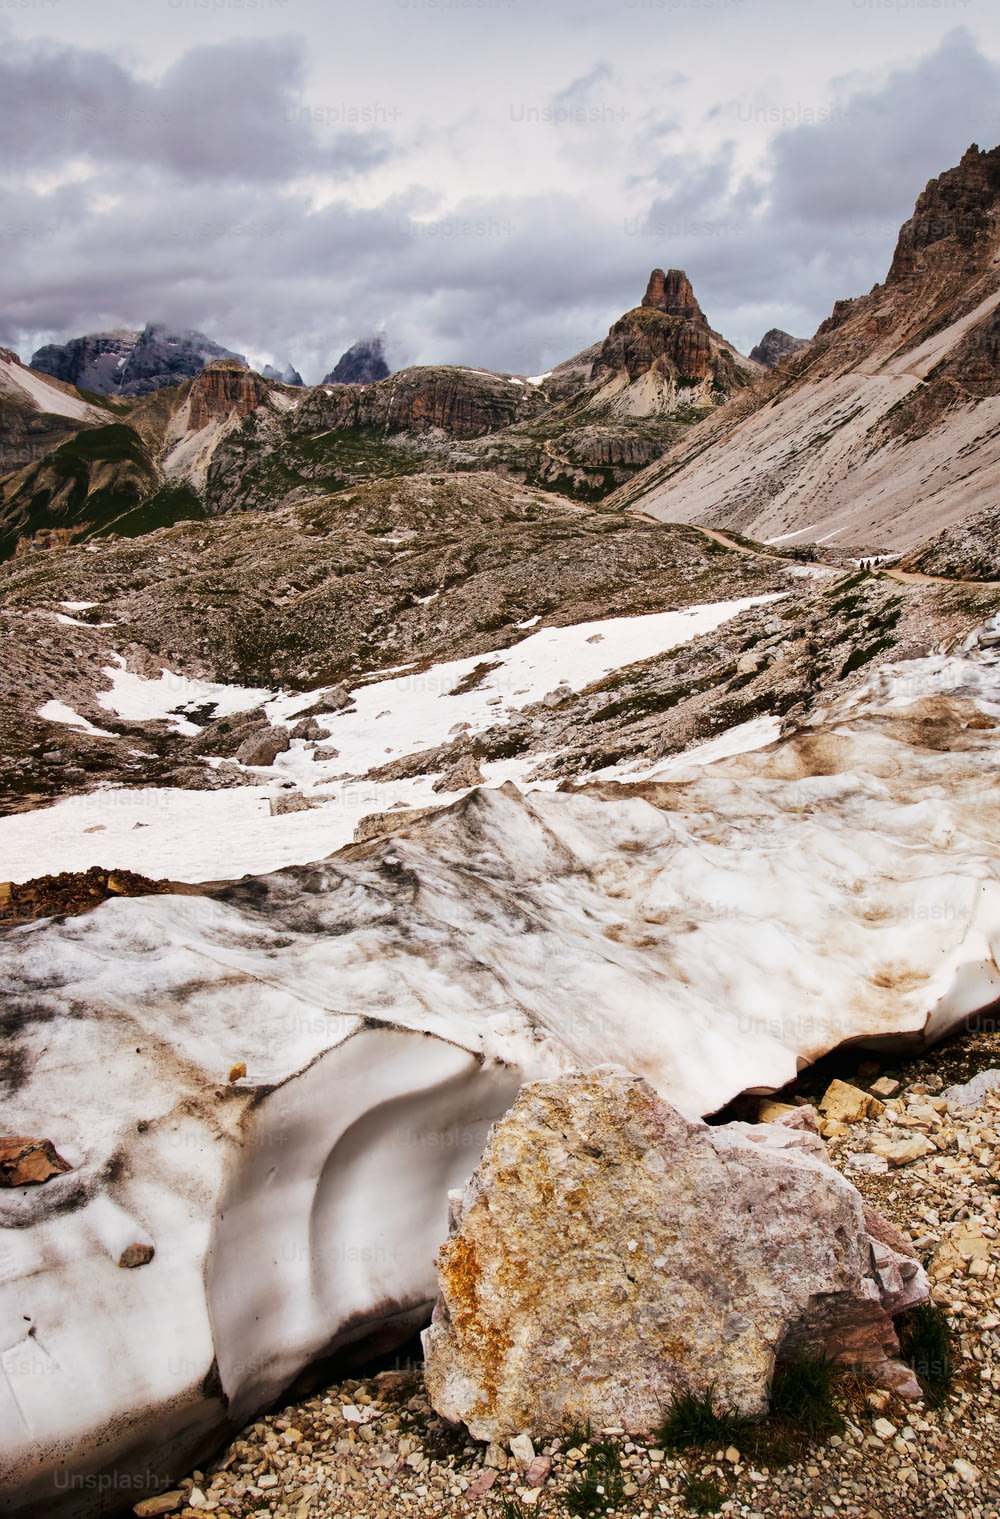 Un paesaggio montano con neve sul terreno e rocce sul terreno